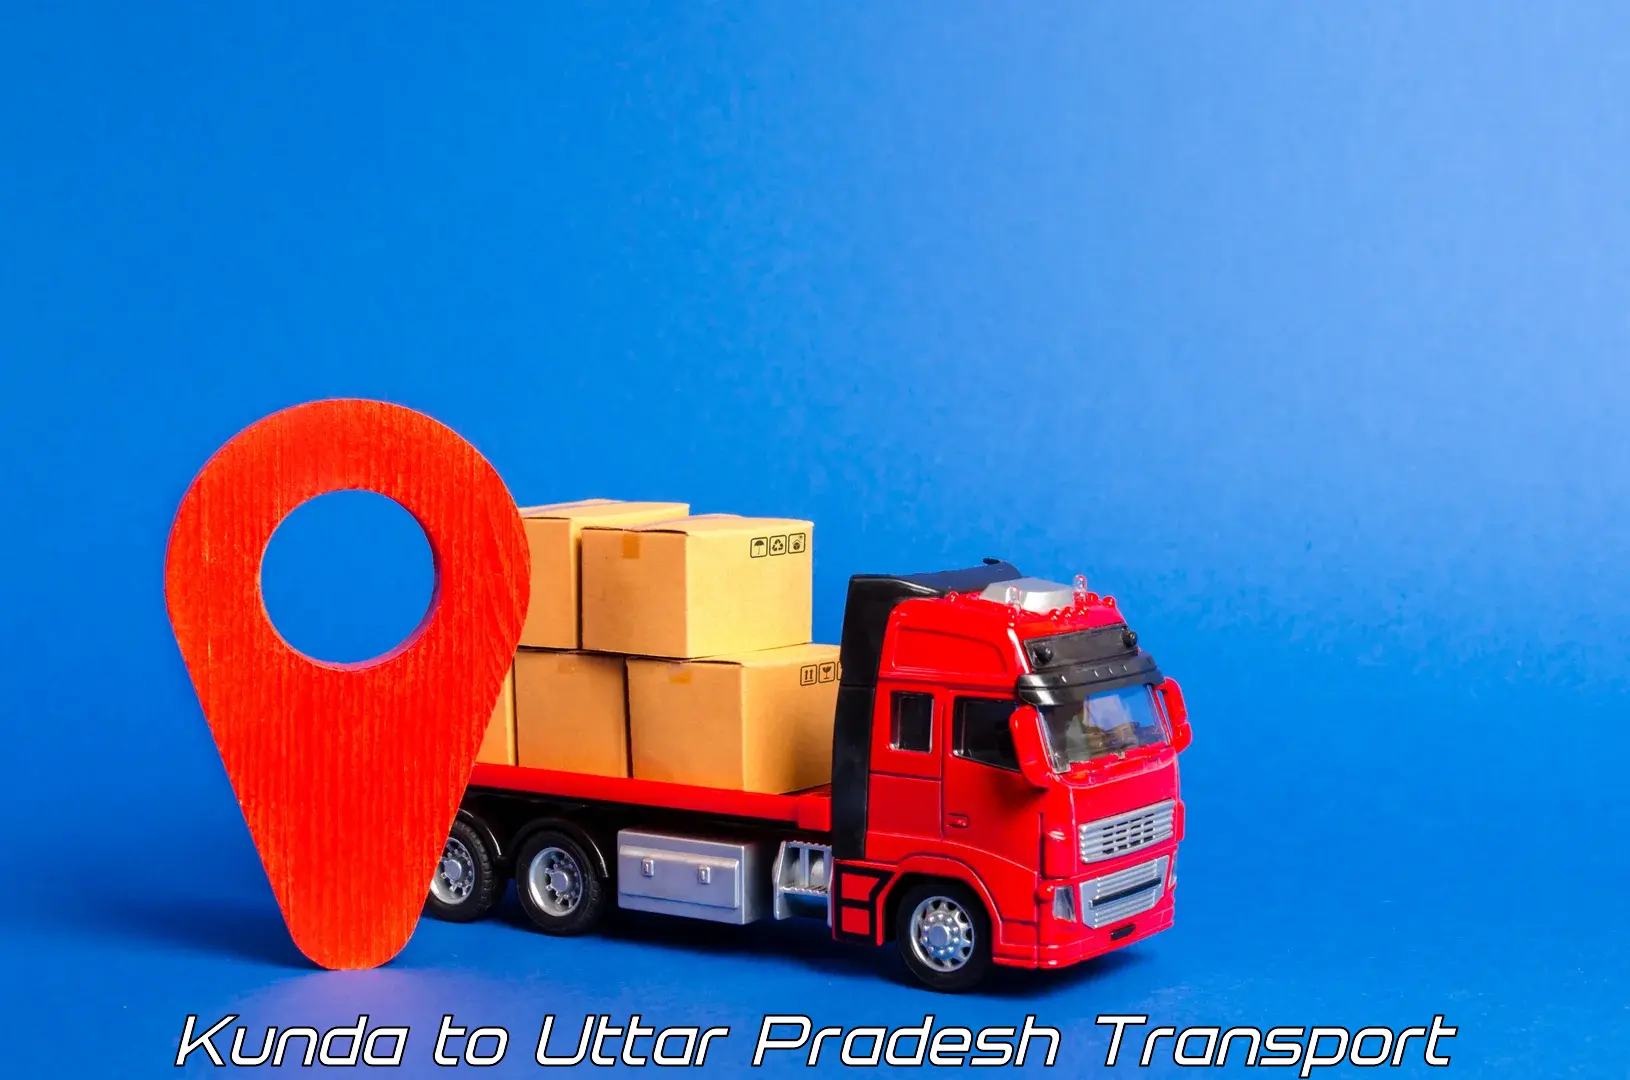 Transport in sharing Kunda to Sant Ravidas Nagar